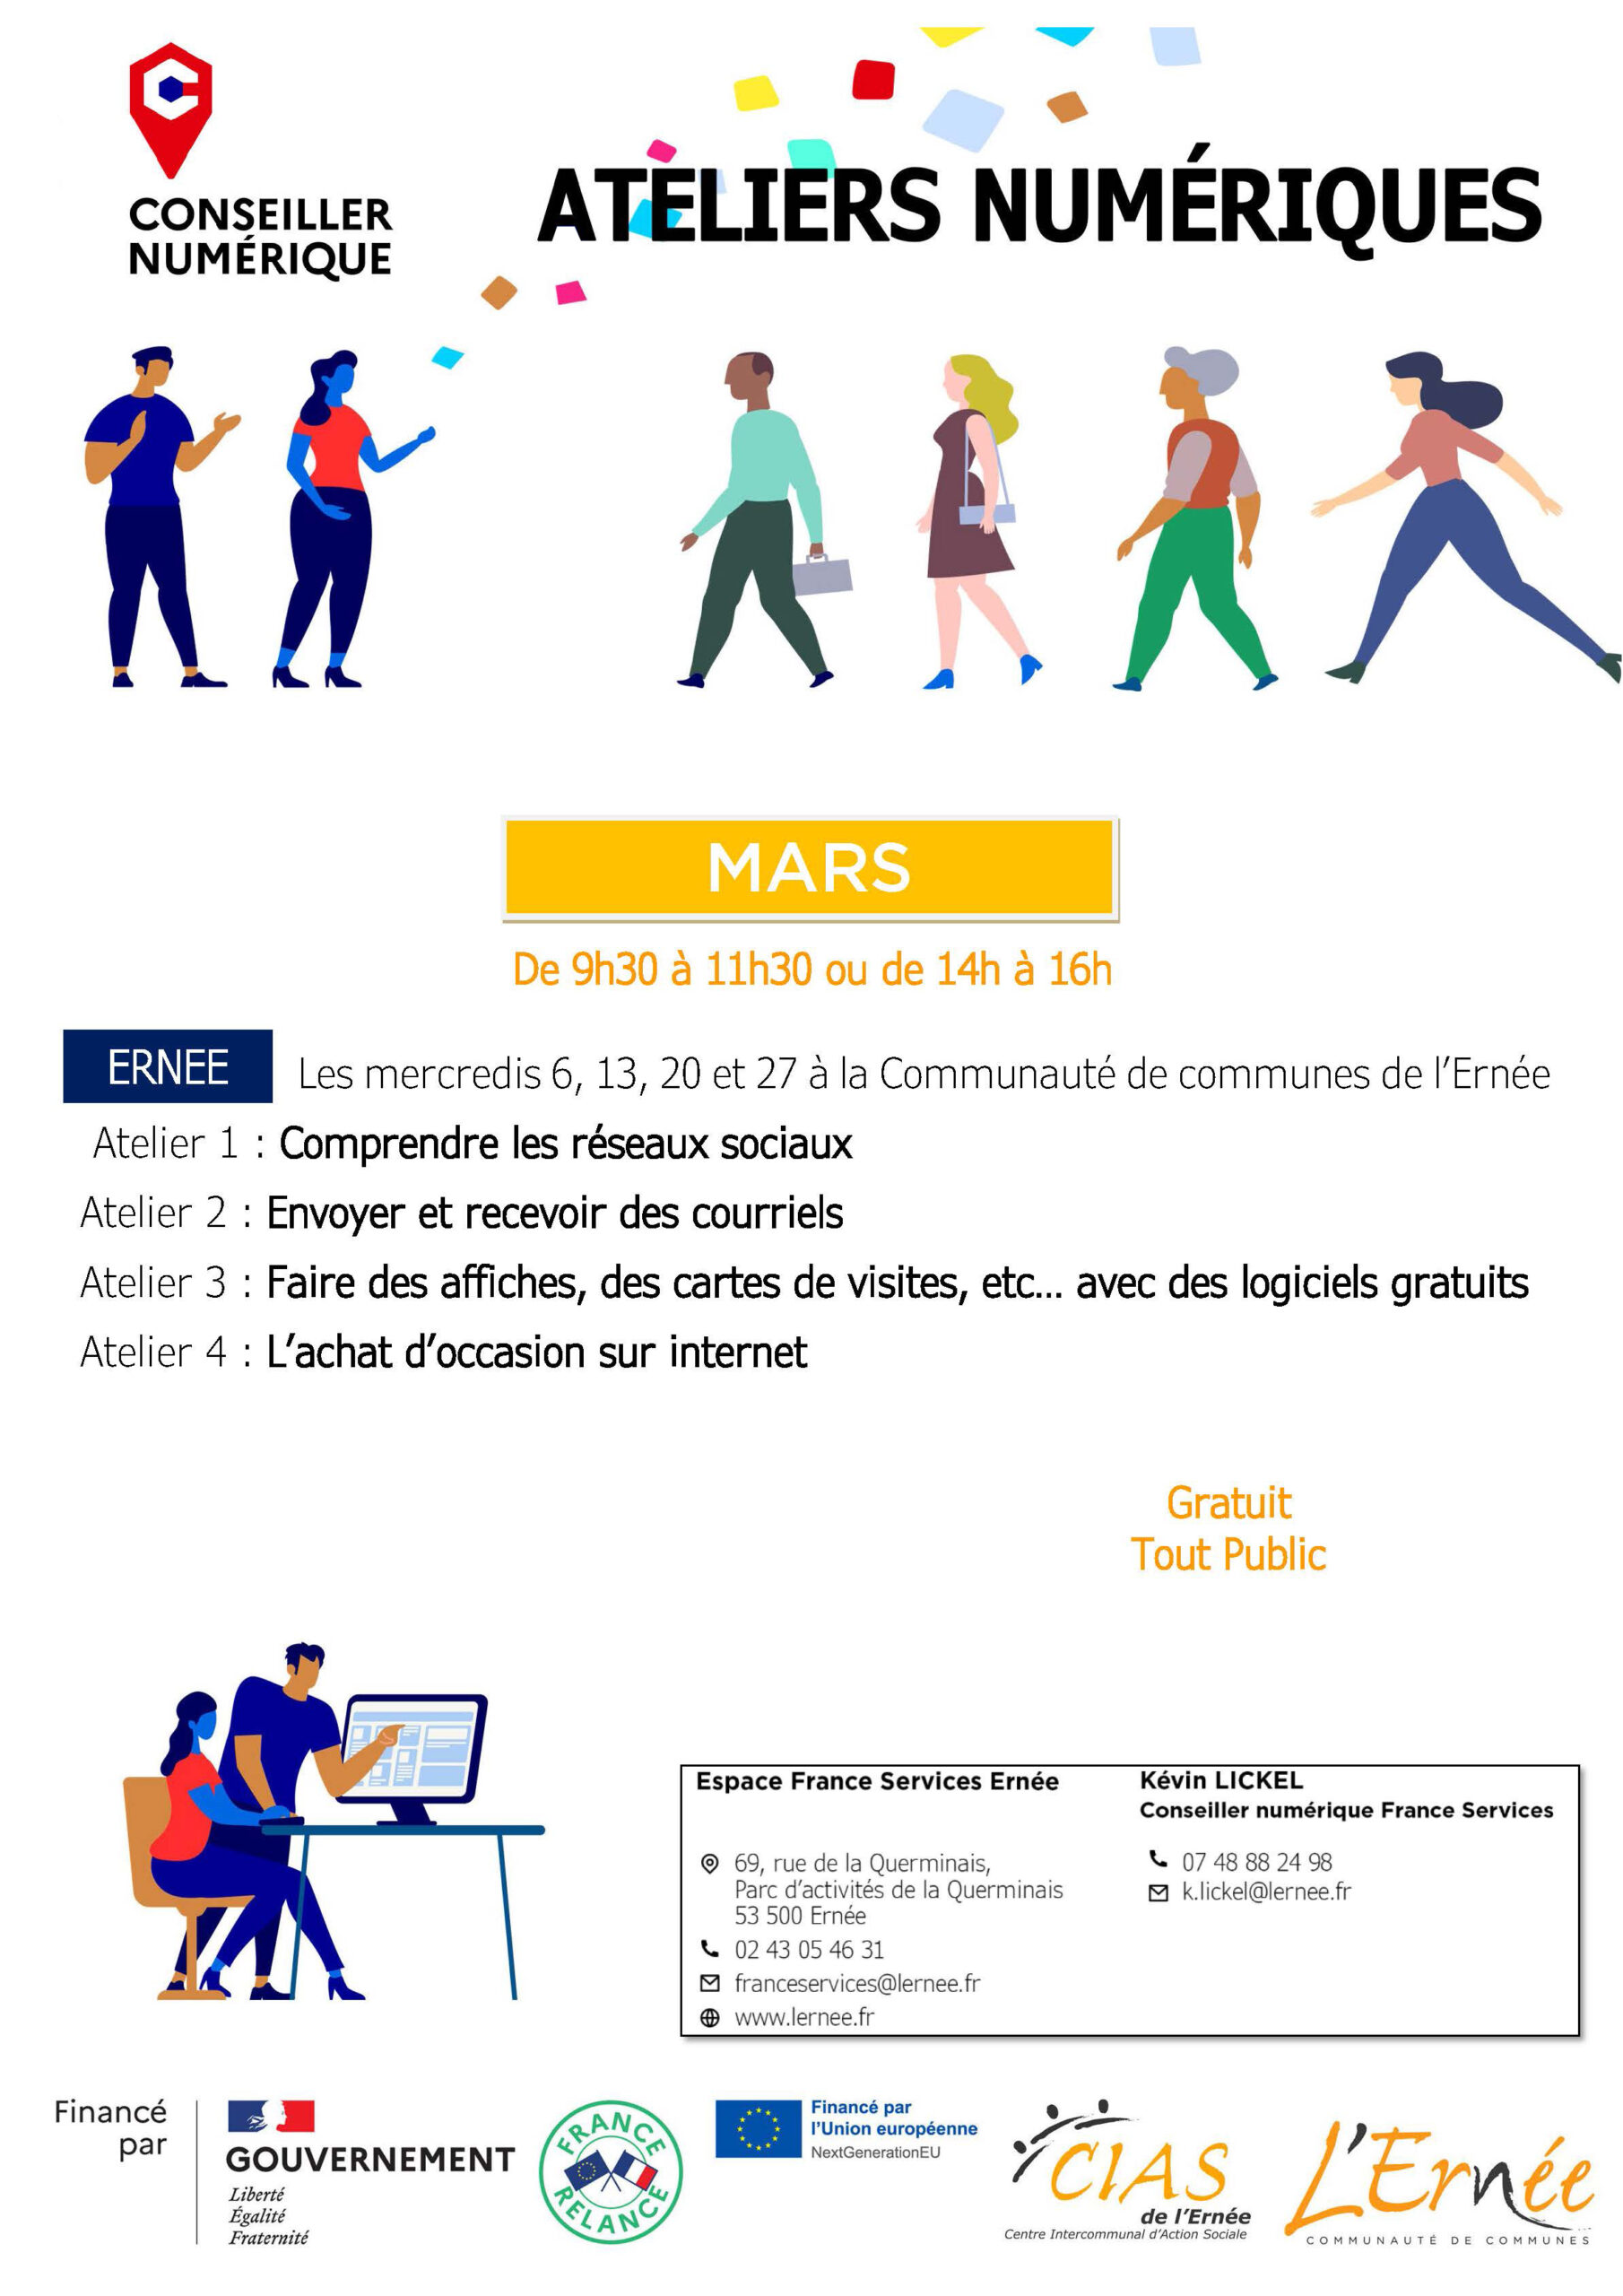 Ateliers numériques - France Services